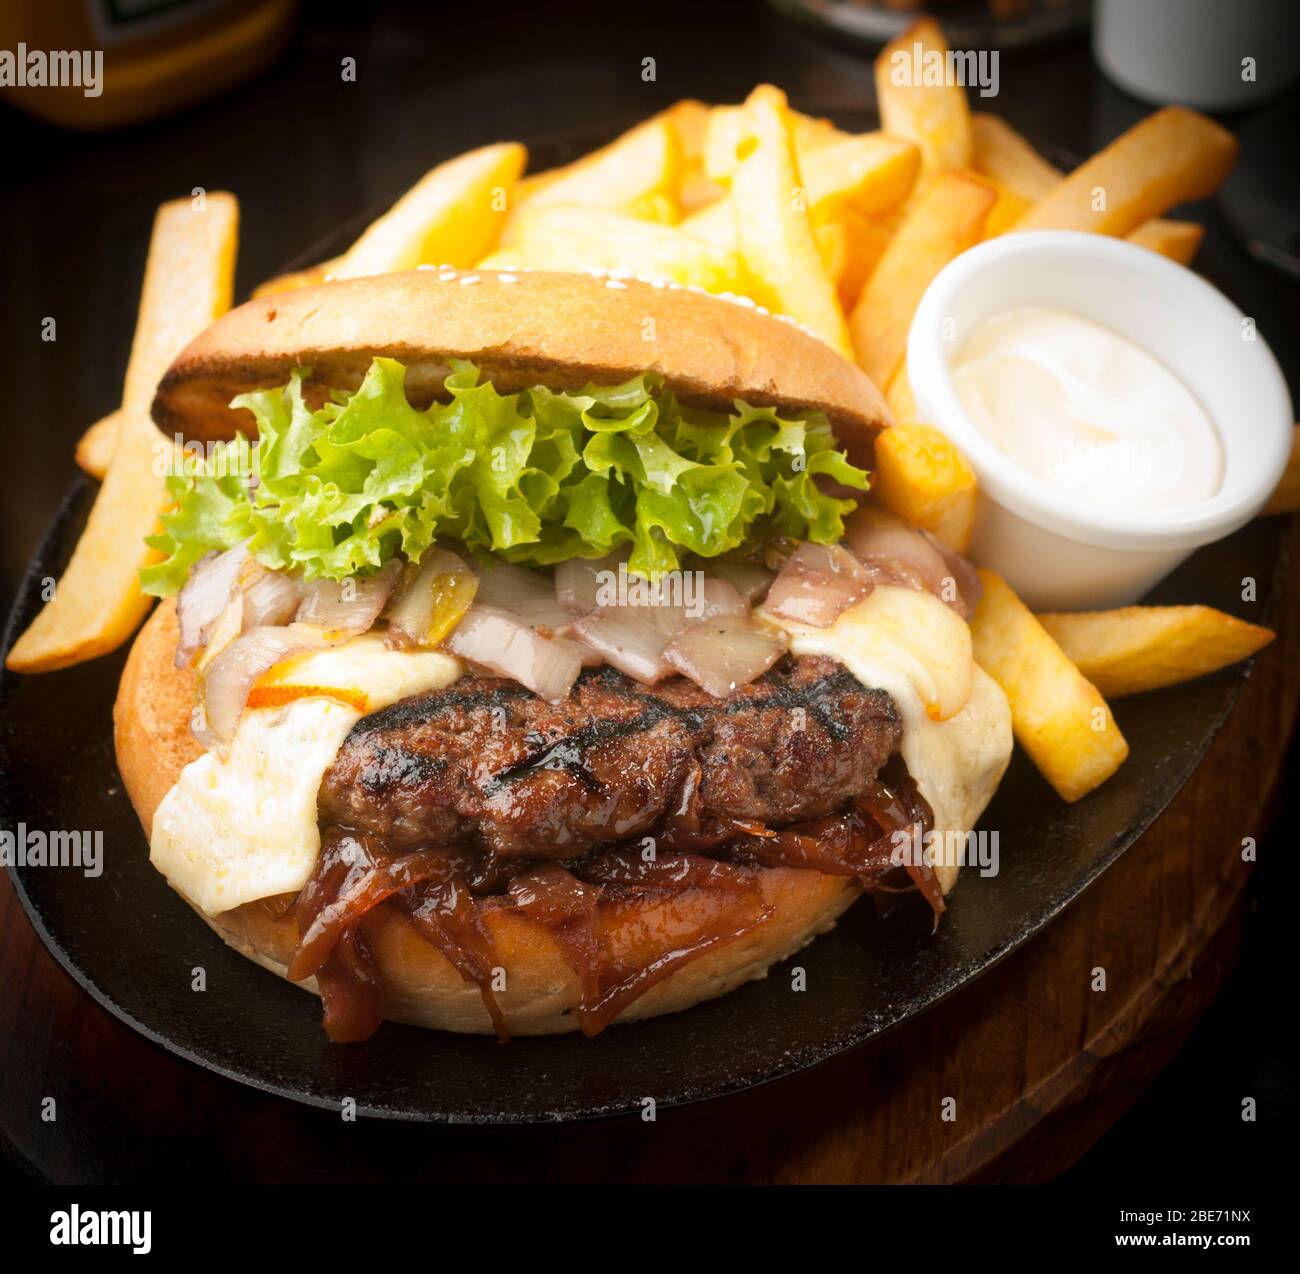 Large, abundant and tasty Hamburger with french fries Stock Photo